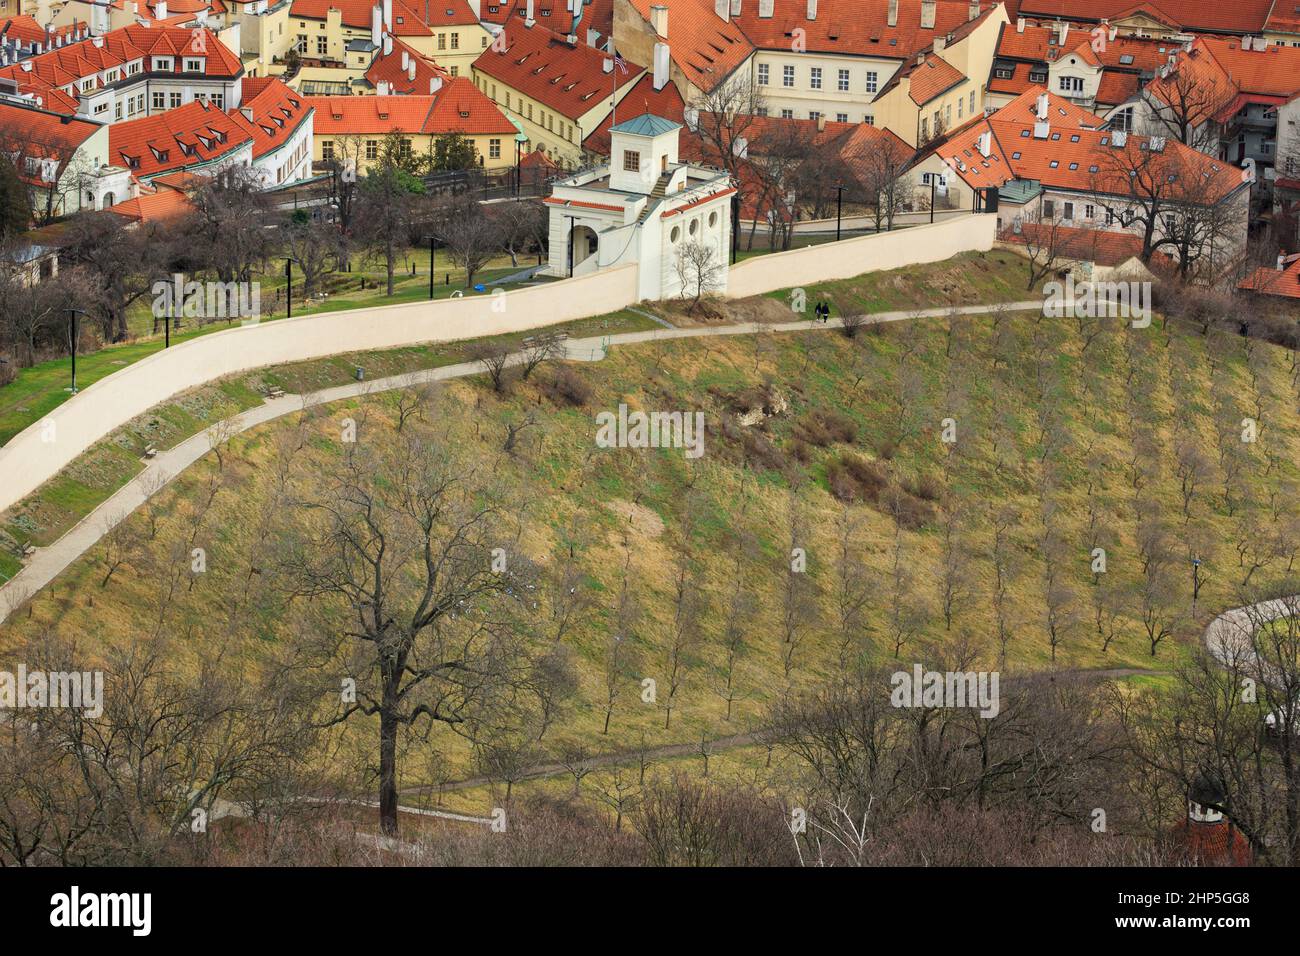 Apfelgarten im Winter an den Hängen des Petrin-Hügels mit den roten Dächern von Hradcany und Mala Strana, der kleineren Altstadt dahinter, Prag Tschechien Stockfoto